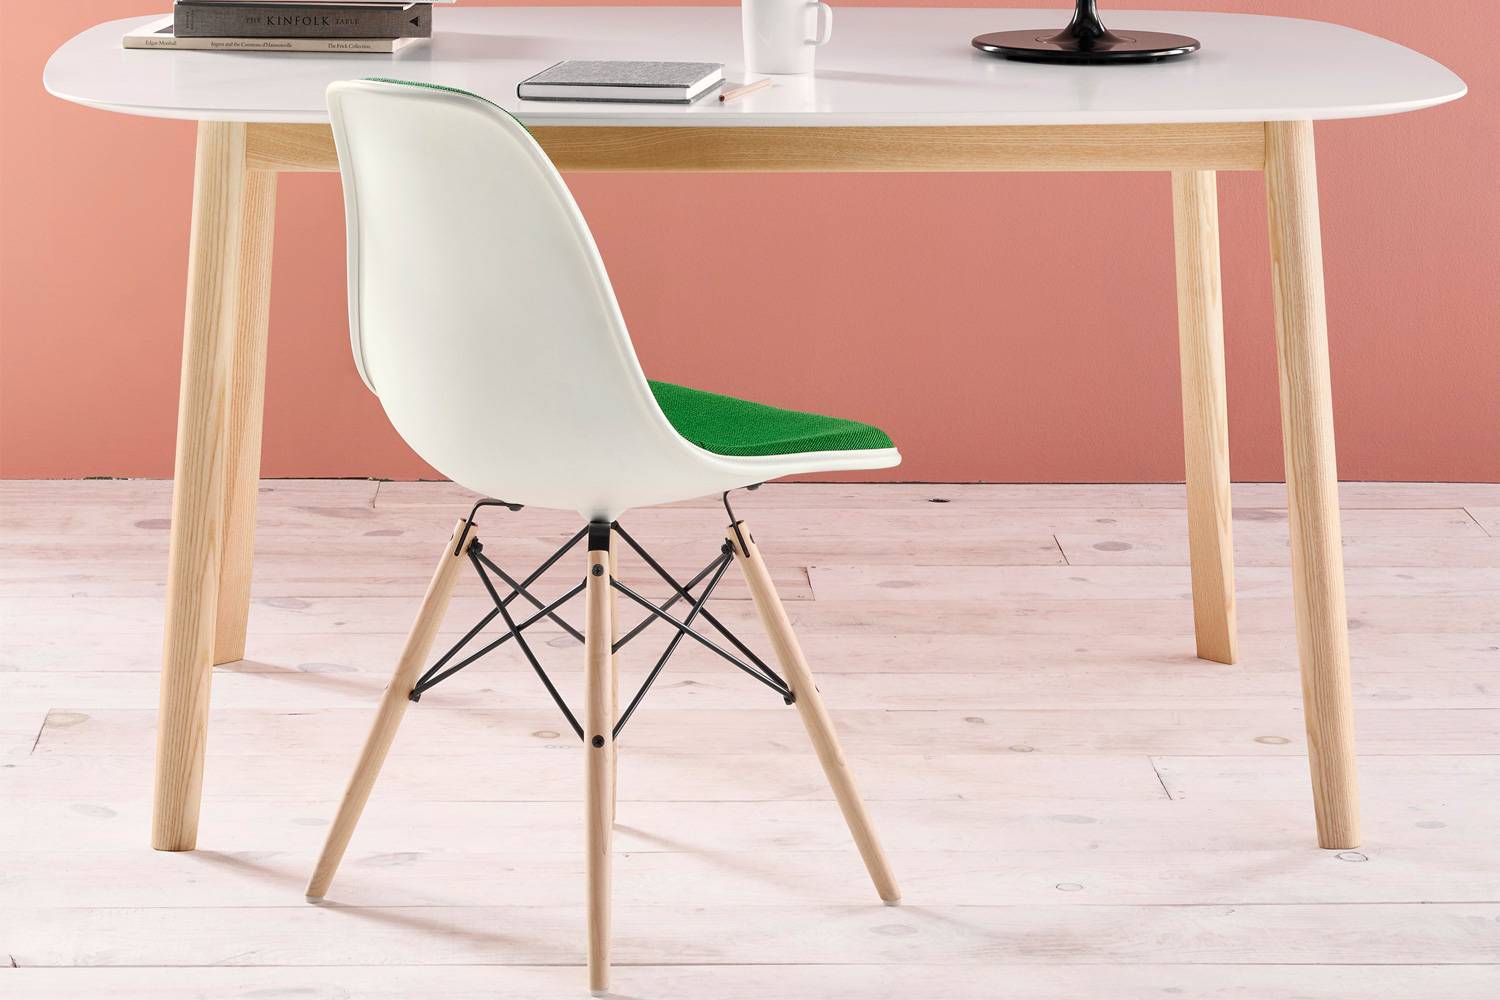 【いしてます】 HermanMiller DSW サイドシェルチェア チェア 椅子 白 2 ェアです